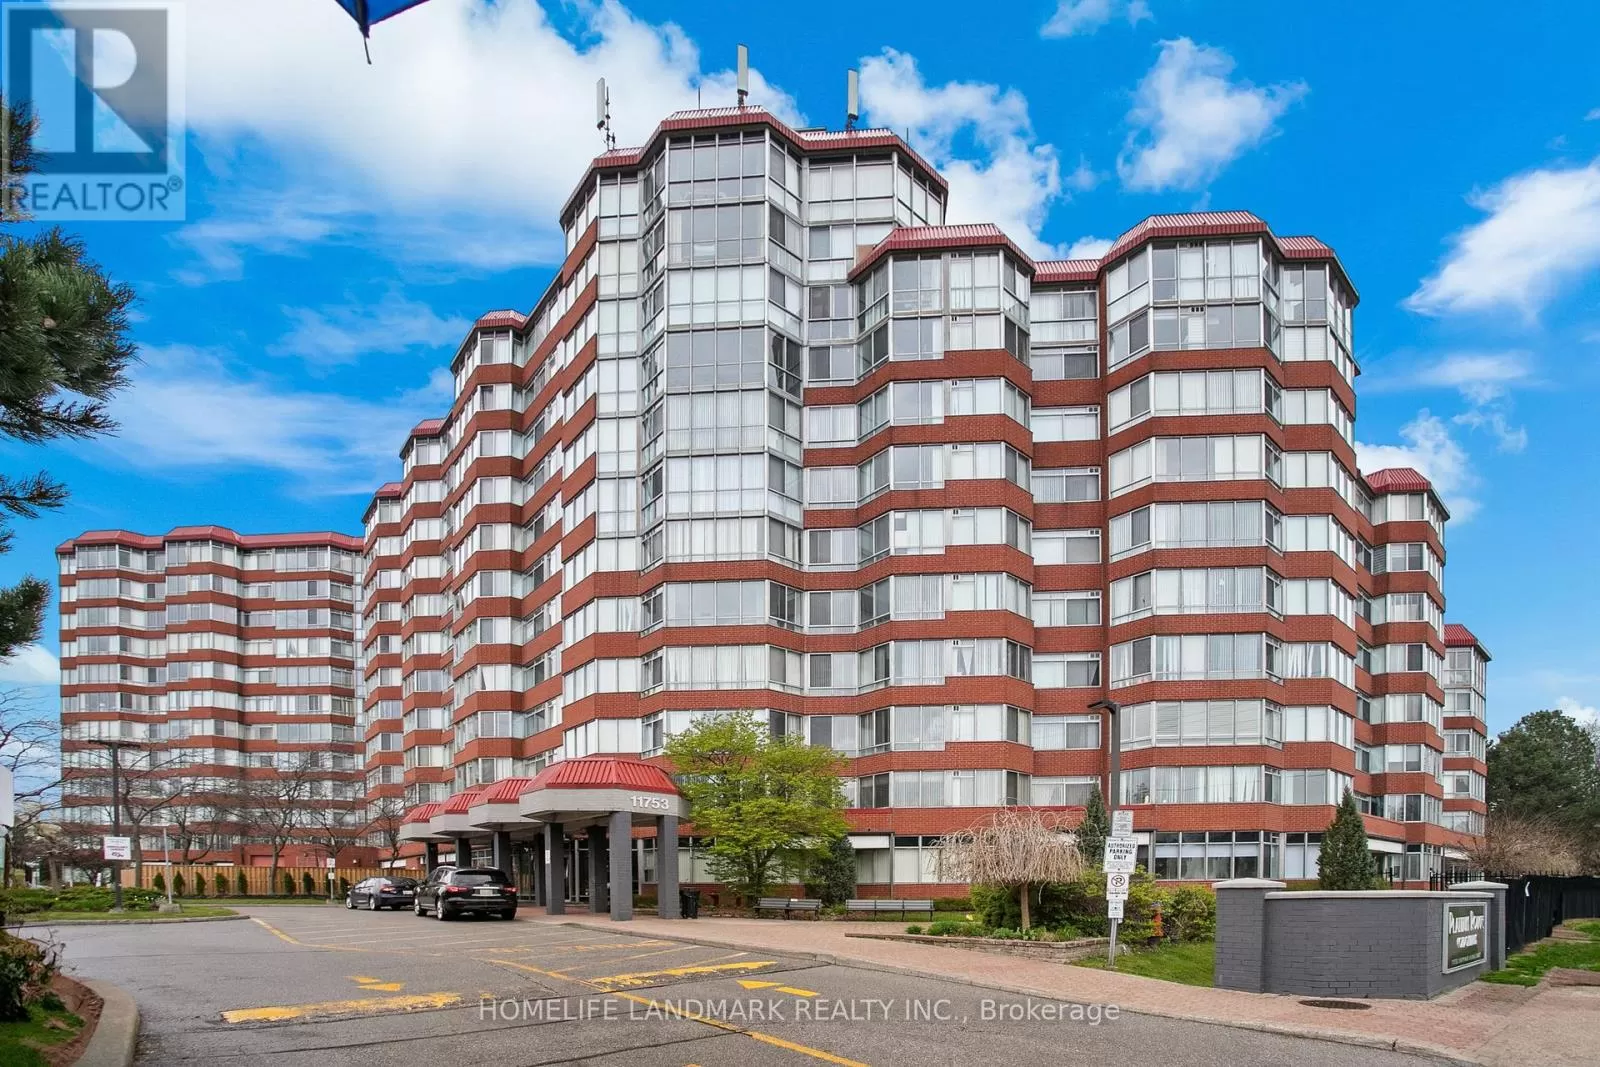 Apartment for rent: 721 - 11753 Sheppard Avenue E, Toronto, Ontario M1B 5M3